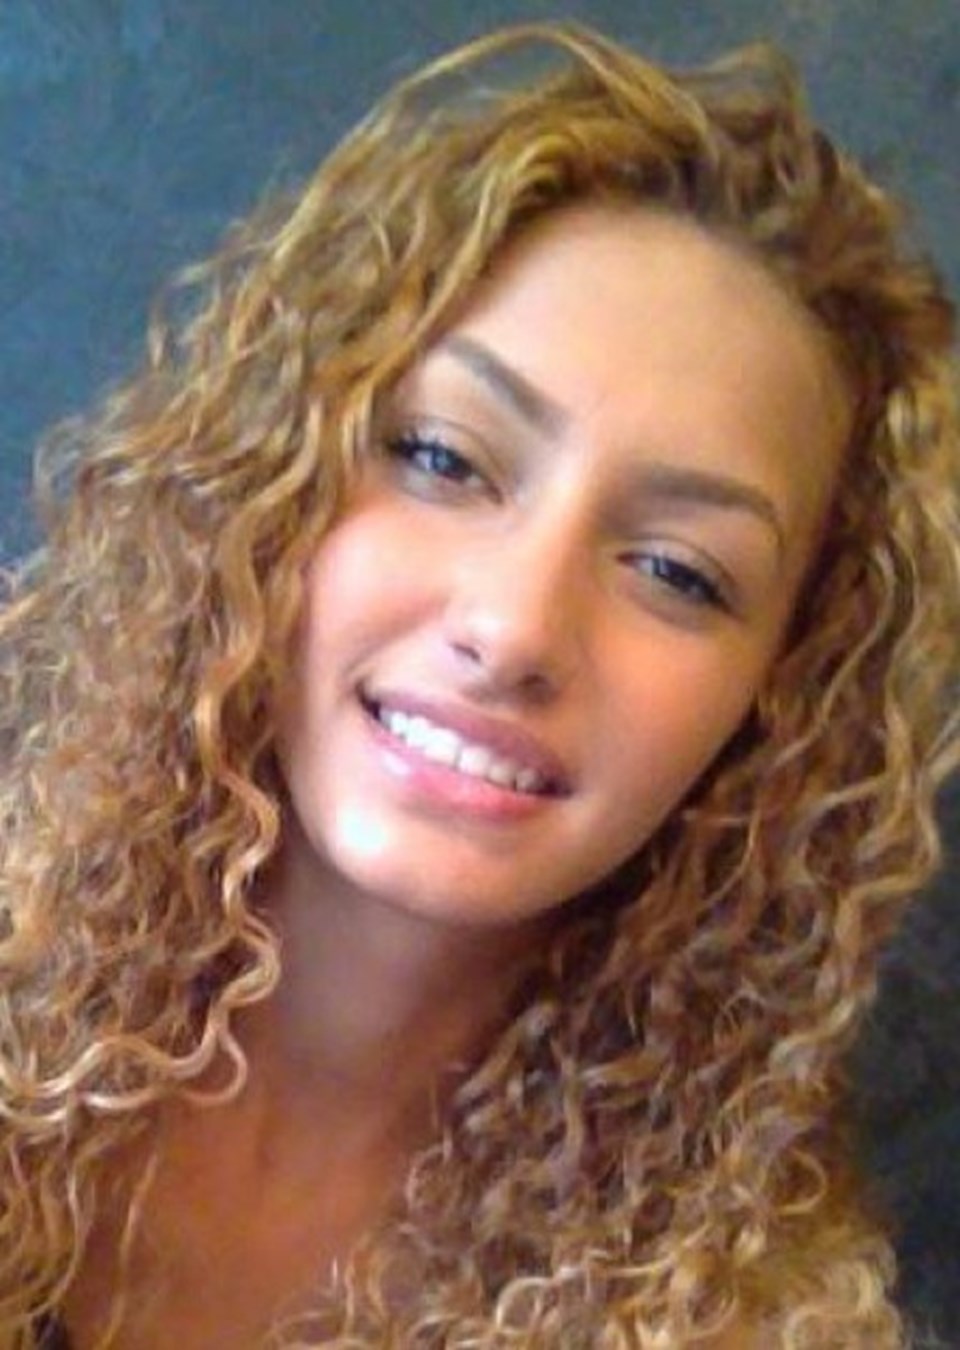 Türk genç kız Londra'daki trafik kazasında öldü - 1